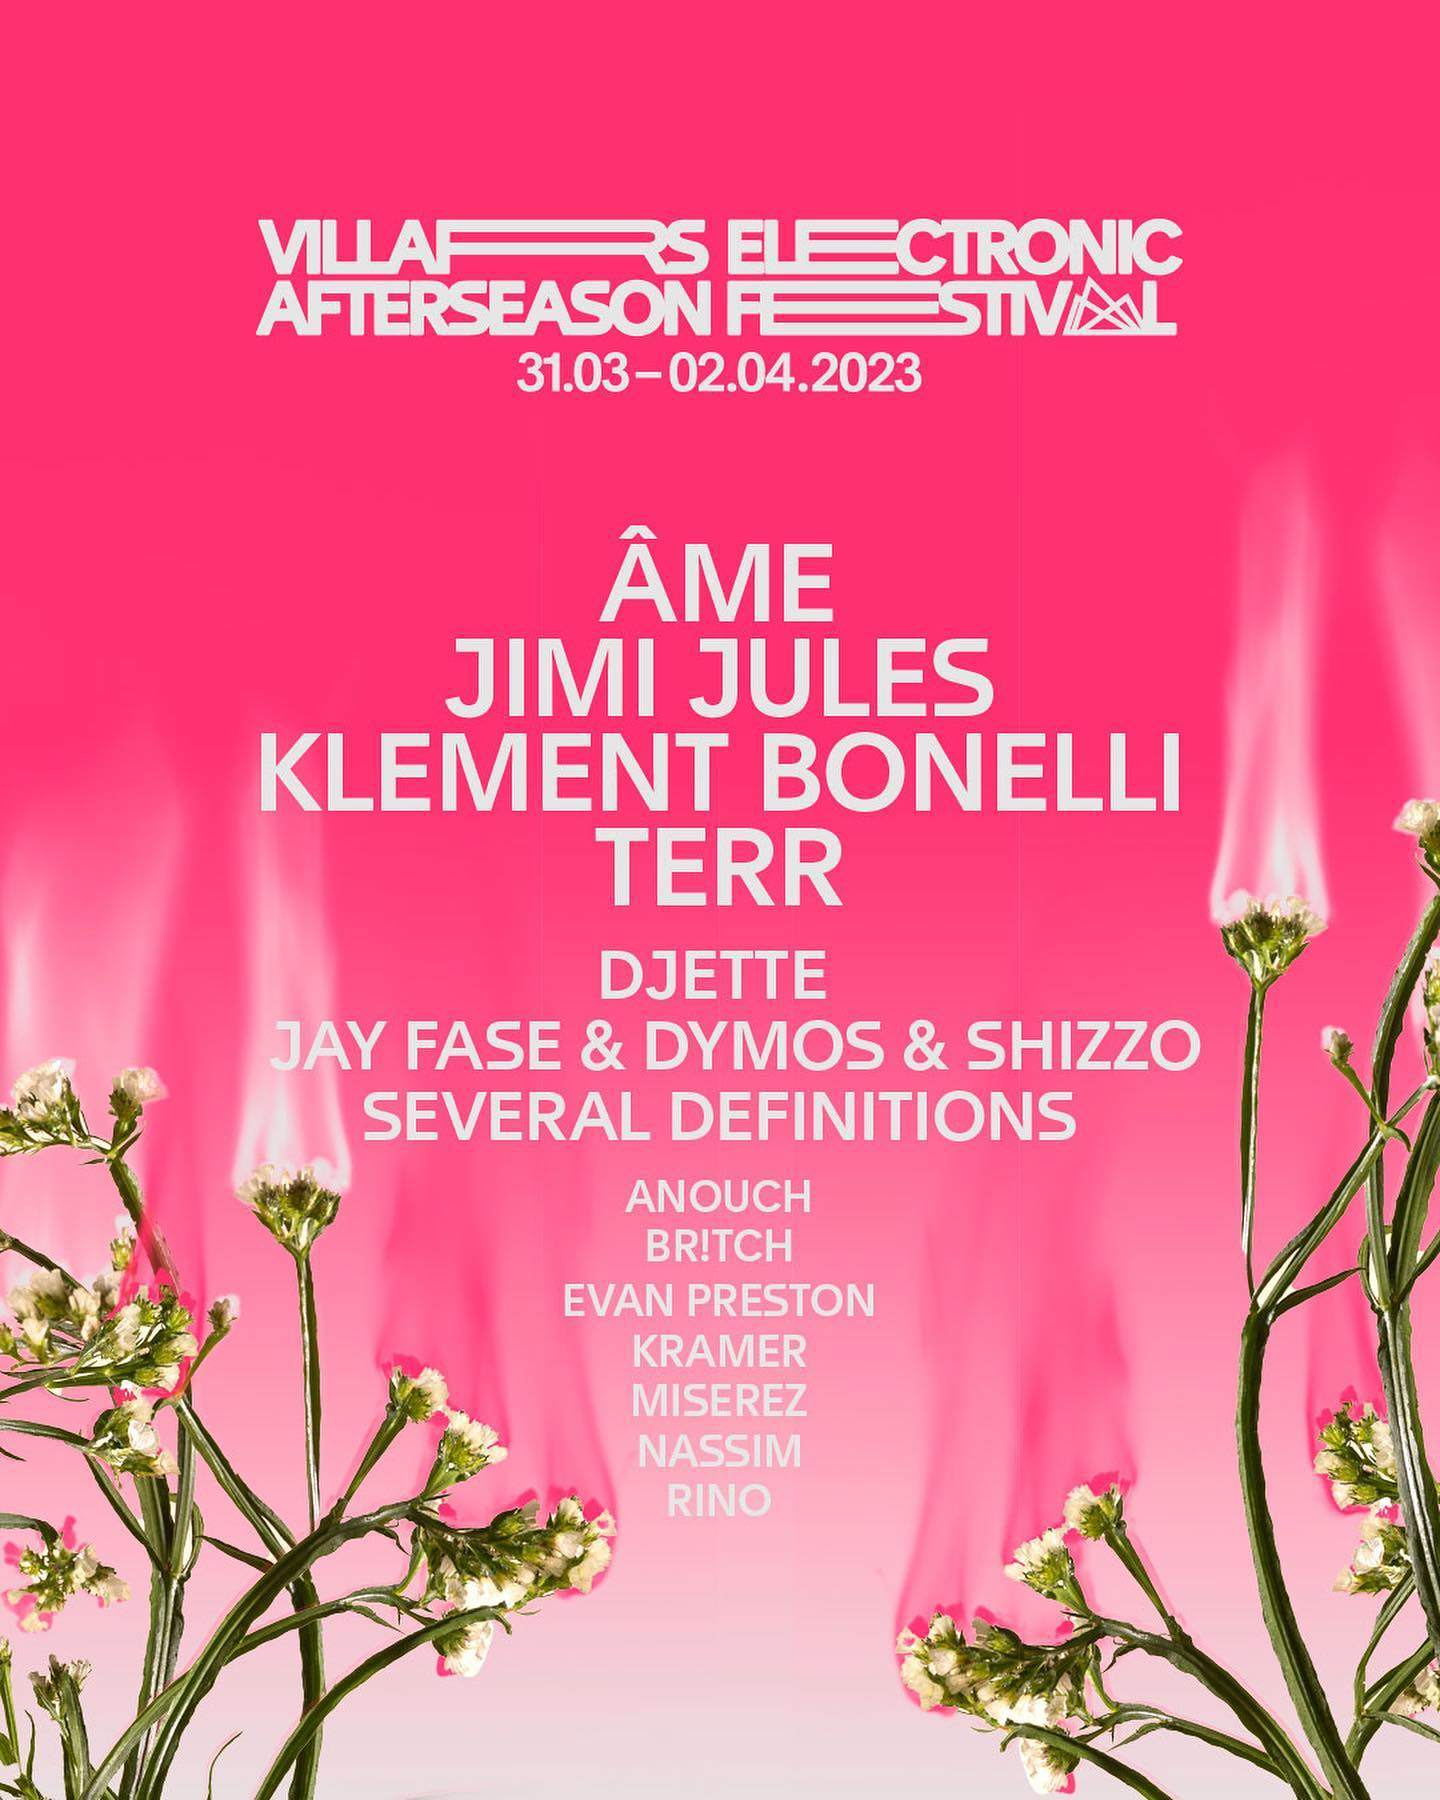 Villars Afterseason Electronic Festival 2023